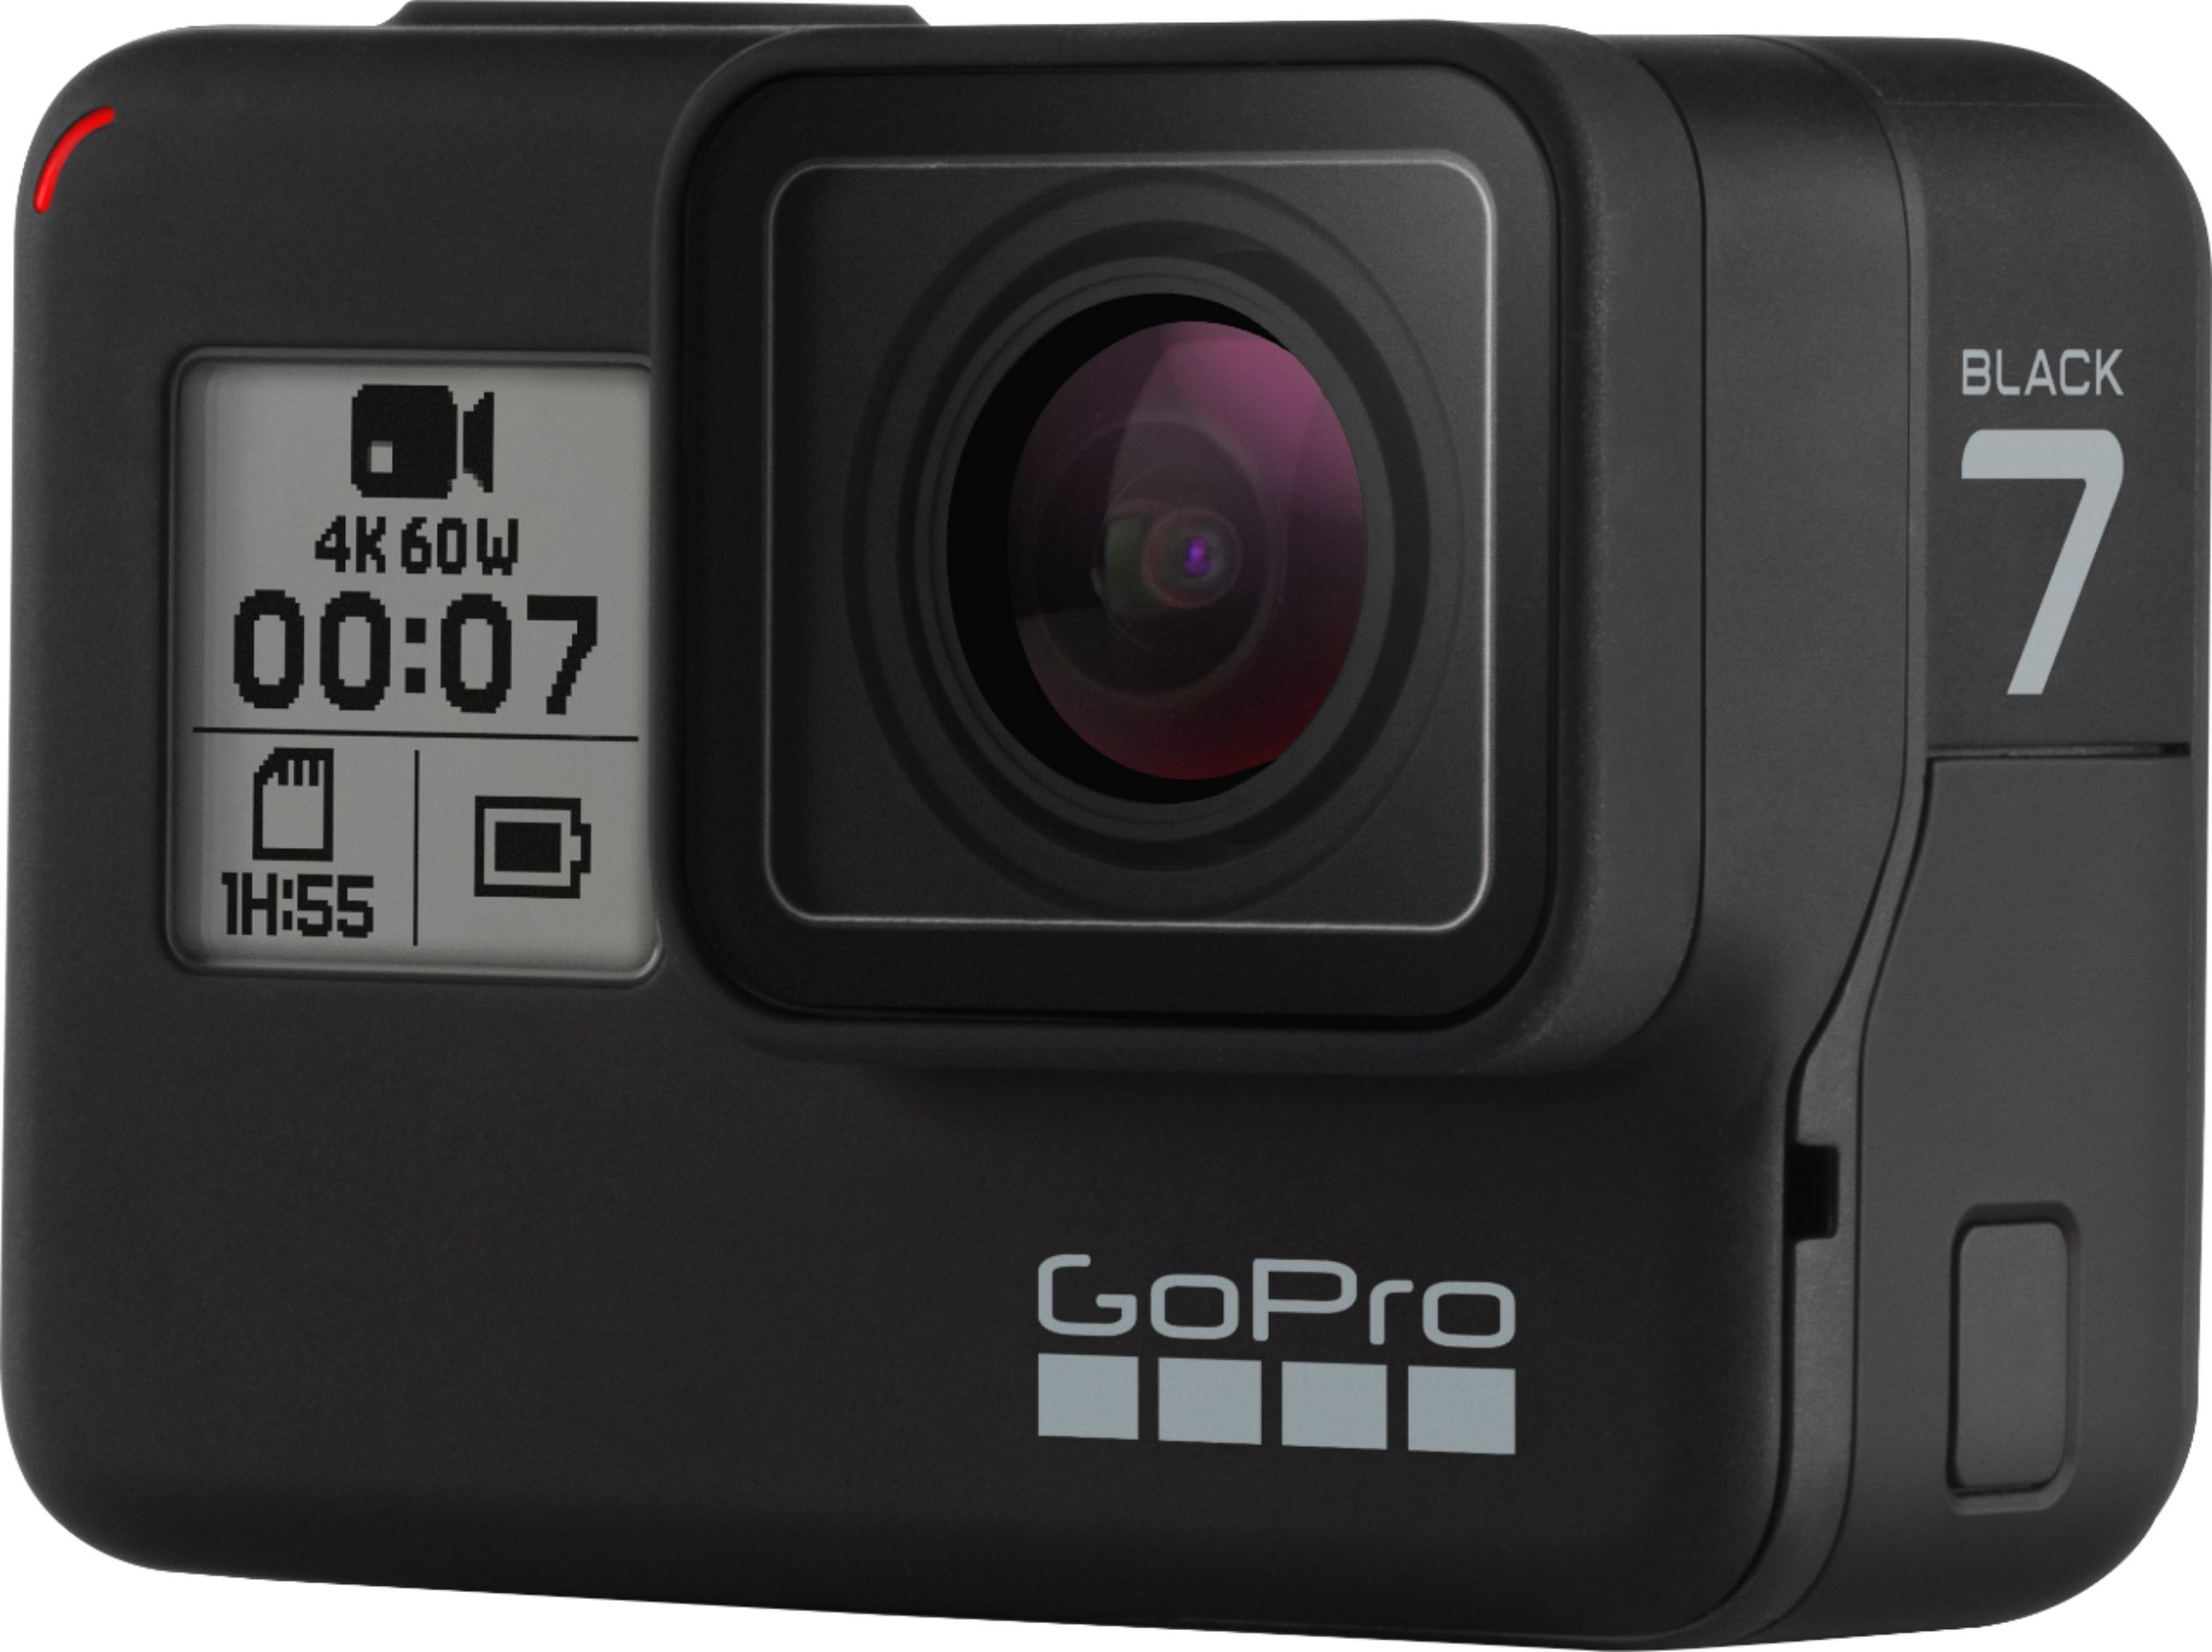 その他 その他 Best Buy: GoPro HERO7 Black 4K Waterproof Action Camera Black 